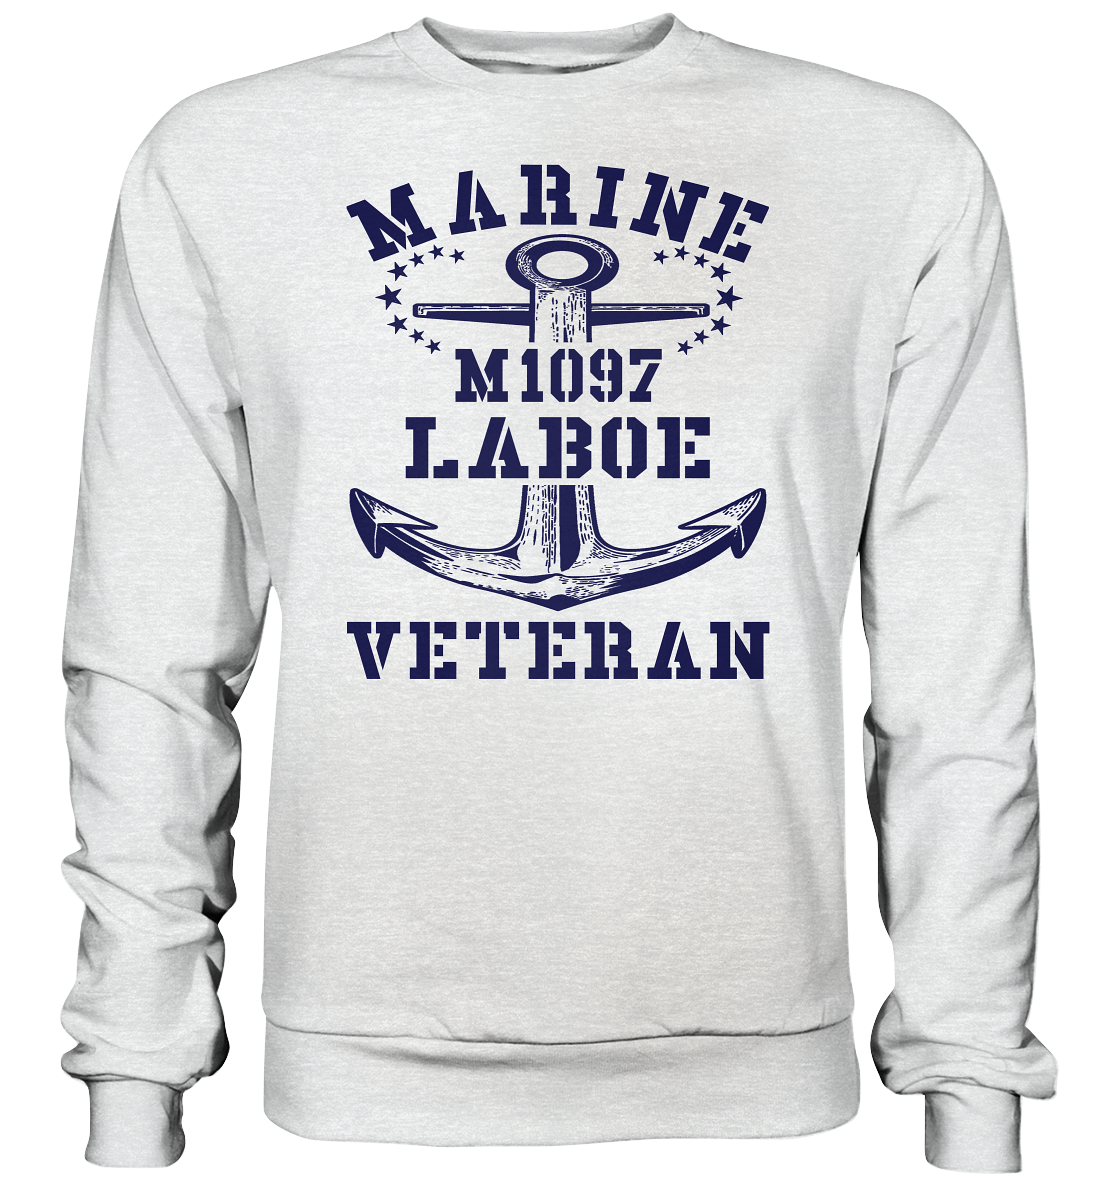 M1097 LABOE Marine Veteran - Premium Sweatshirt